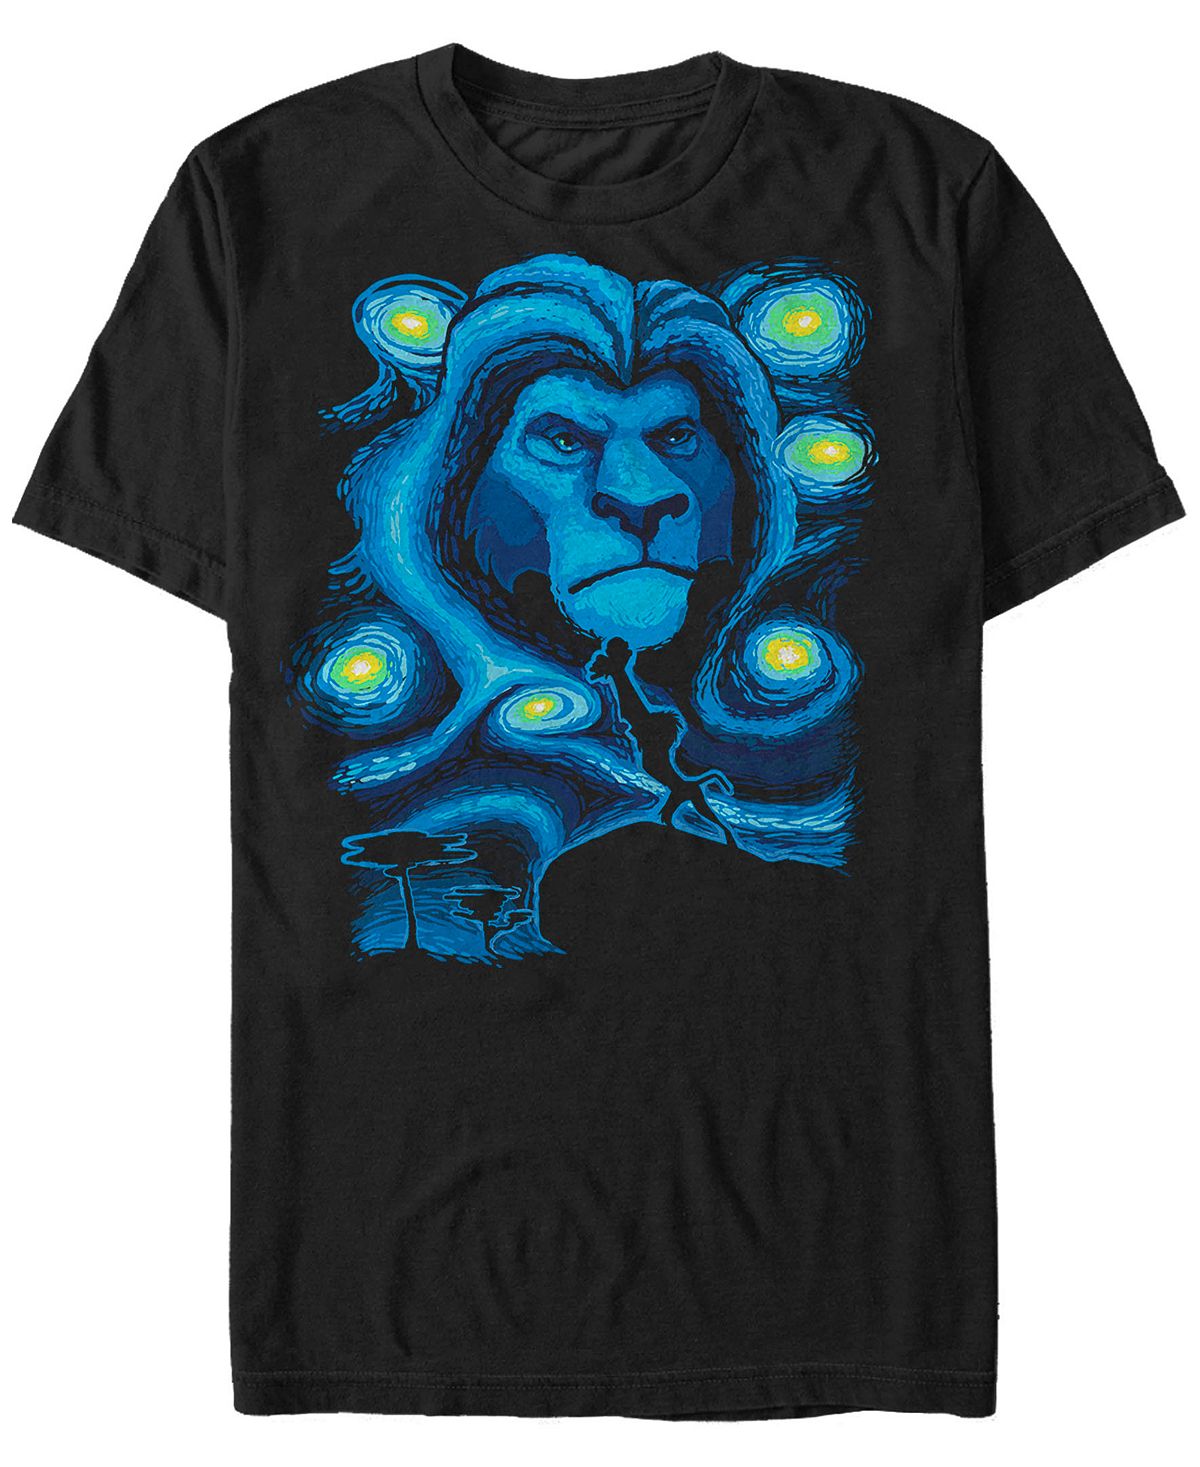 Мужская футболка с коротким рукавом disney the lion king mufasa starry night Fifth Sun, черный фотографии